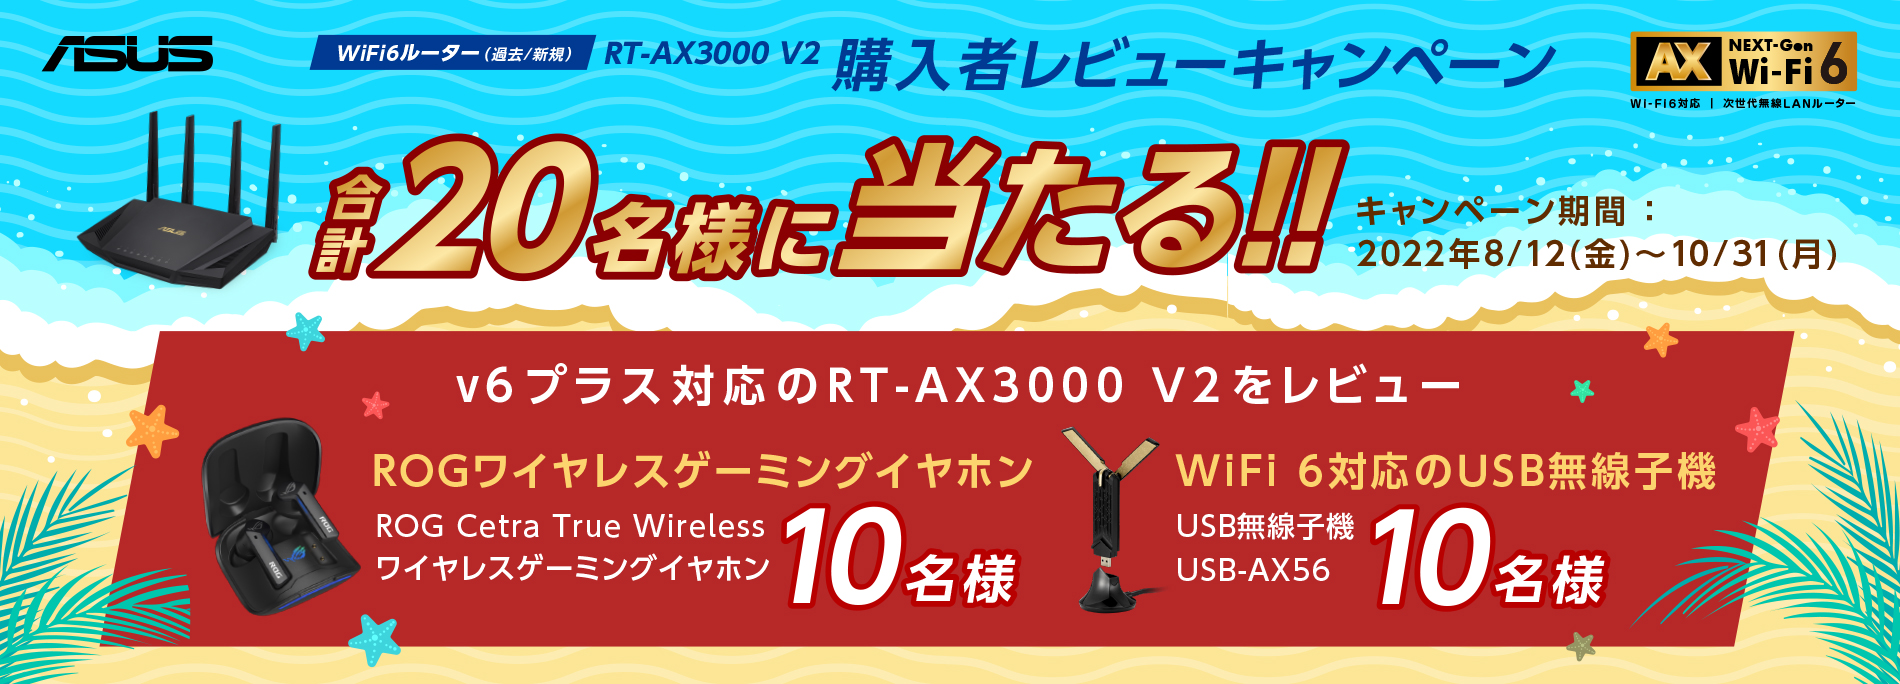 ASUS、Wi-Fi 6ルーター「RT-AX3000 V2」購入＆レビューでワイヤレス